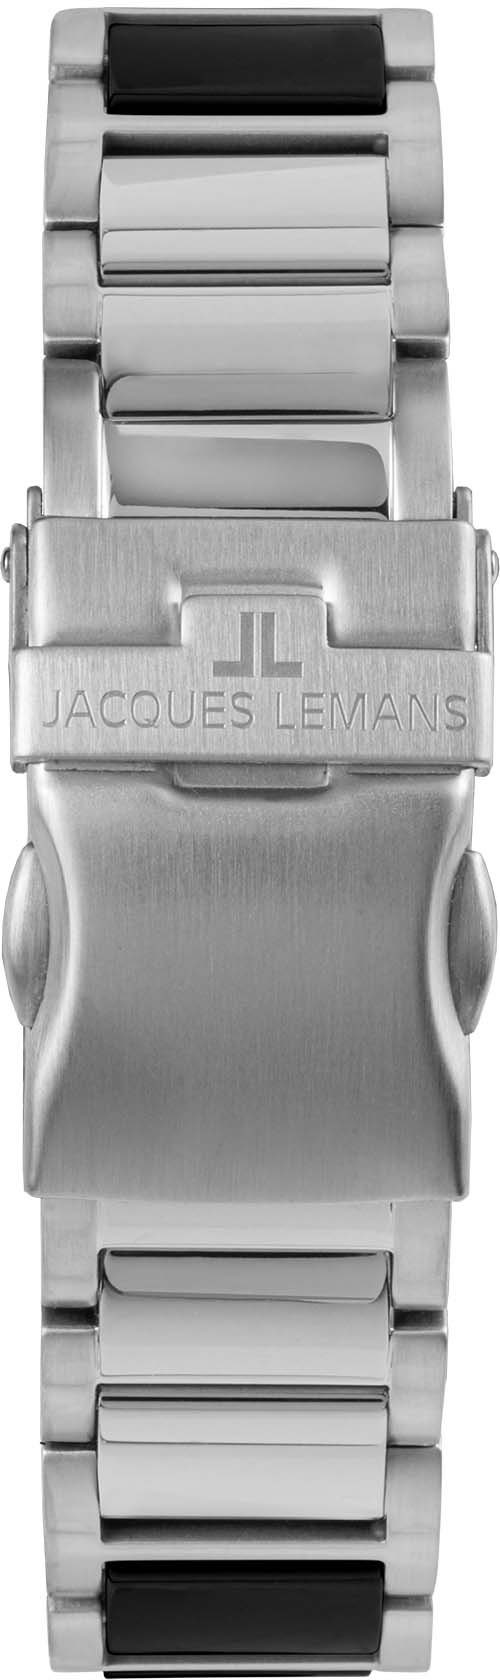 Lemans Jacques Liverpool, 42-12A schwarz Keramikuhr